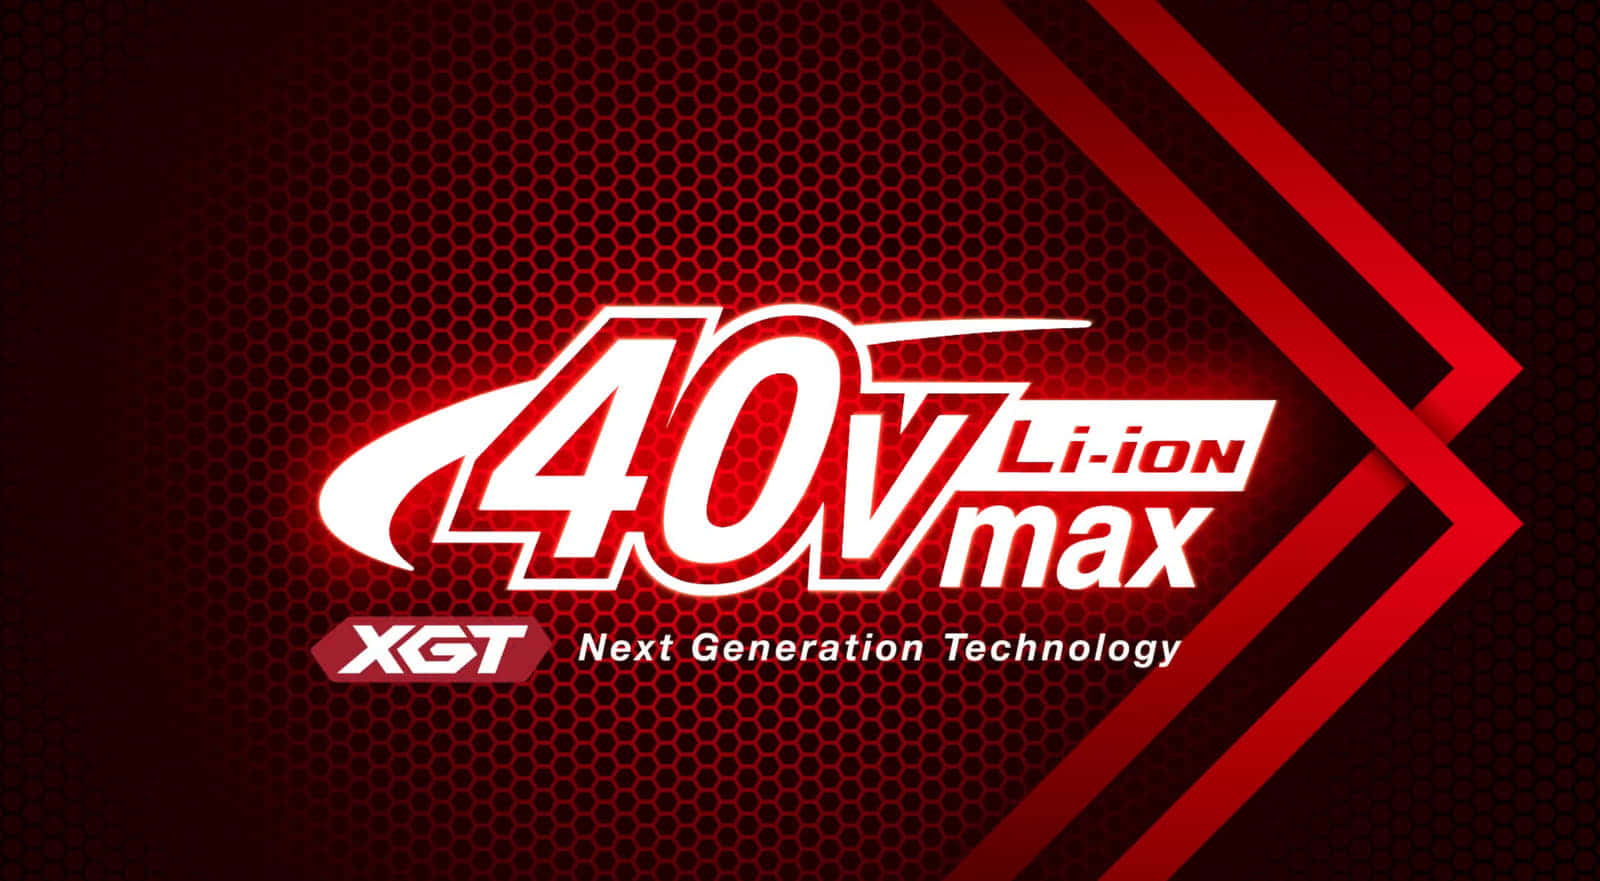 マキタが40Vmaxシリーズを新しく展開した理由